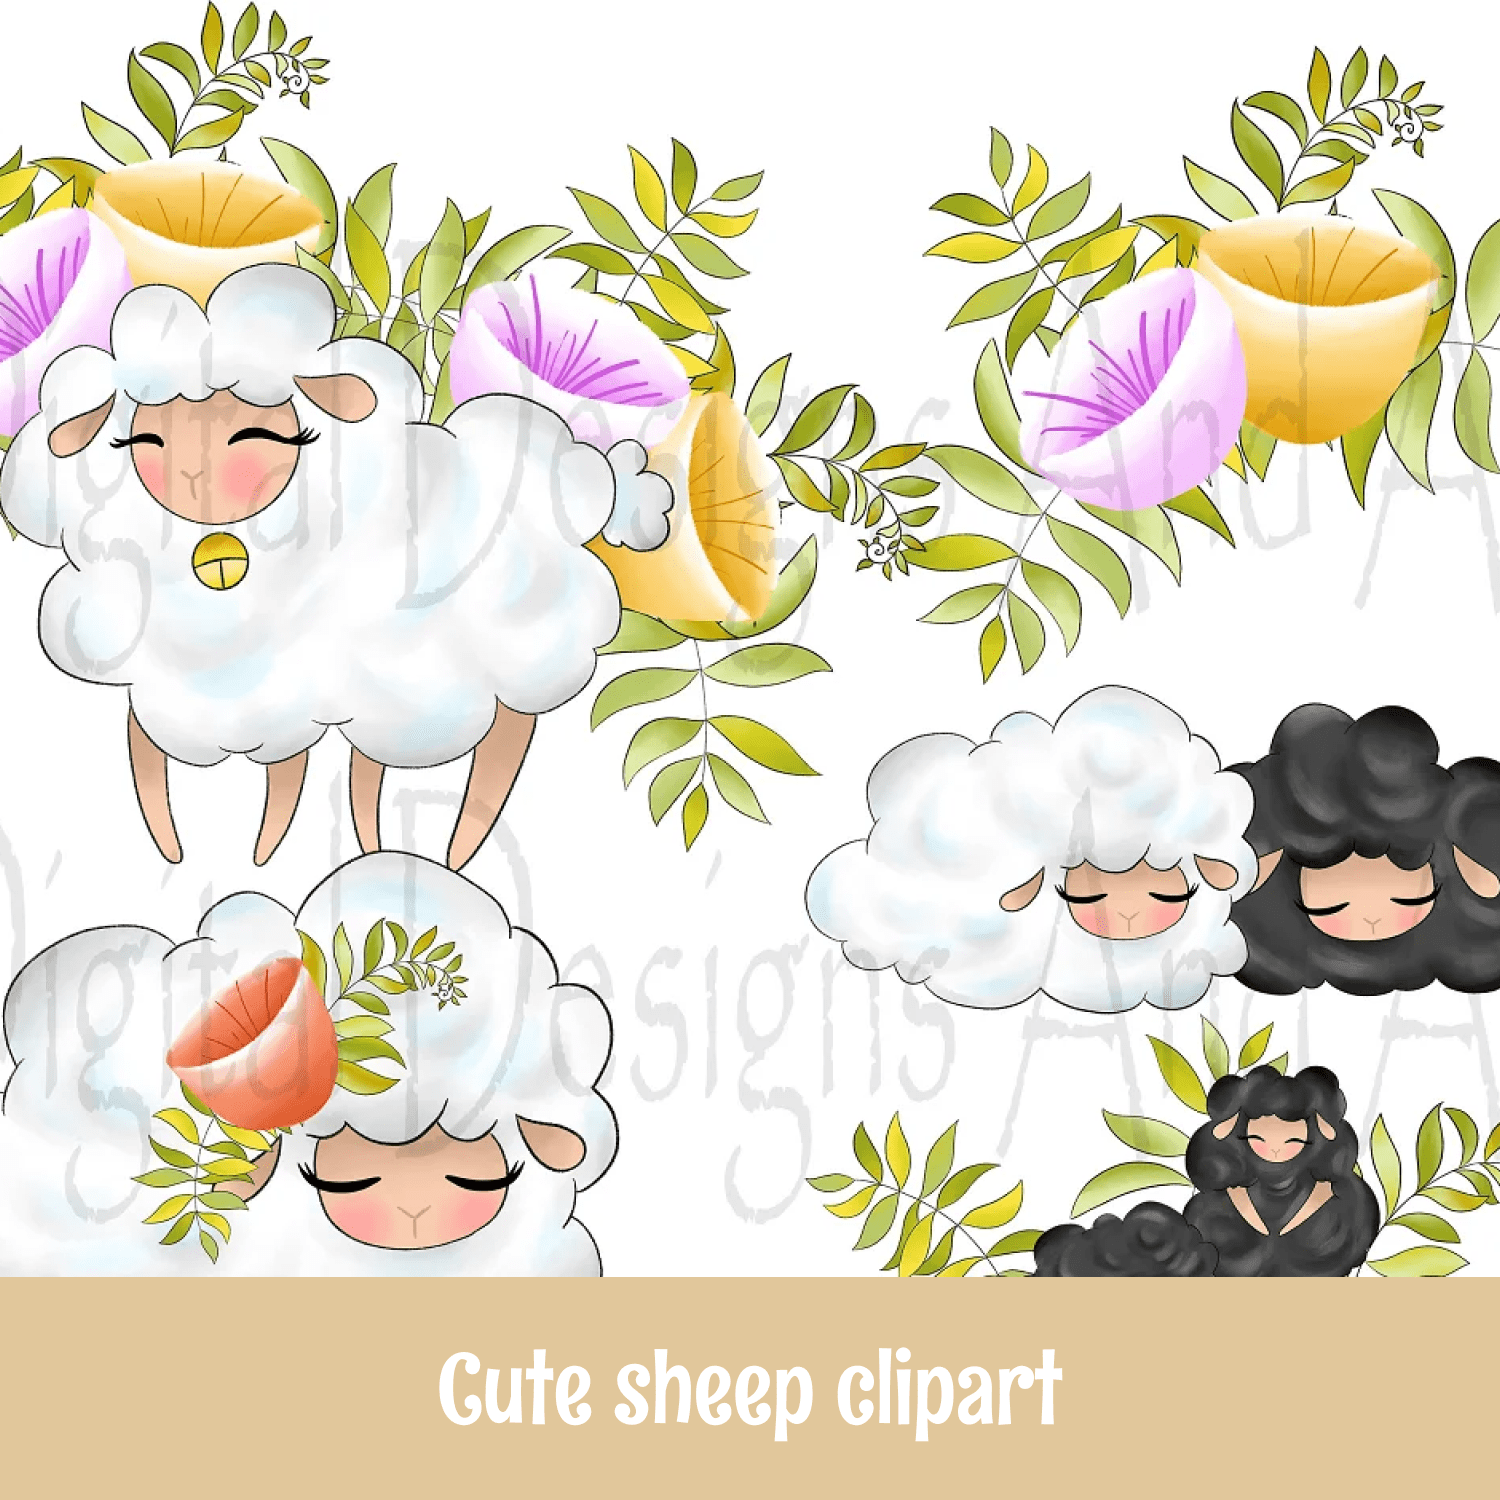 Cute sheep clipart cover.